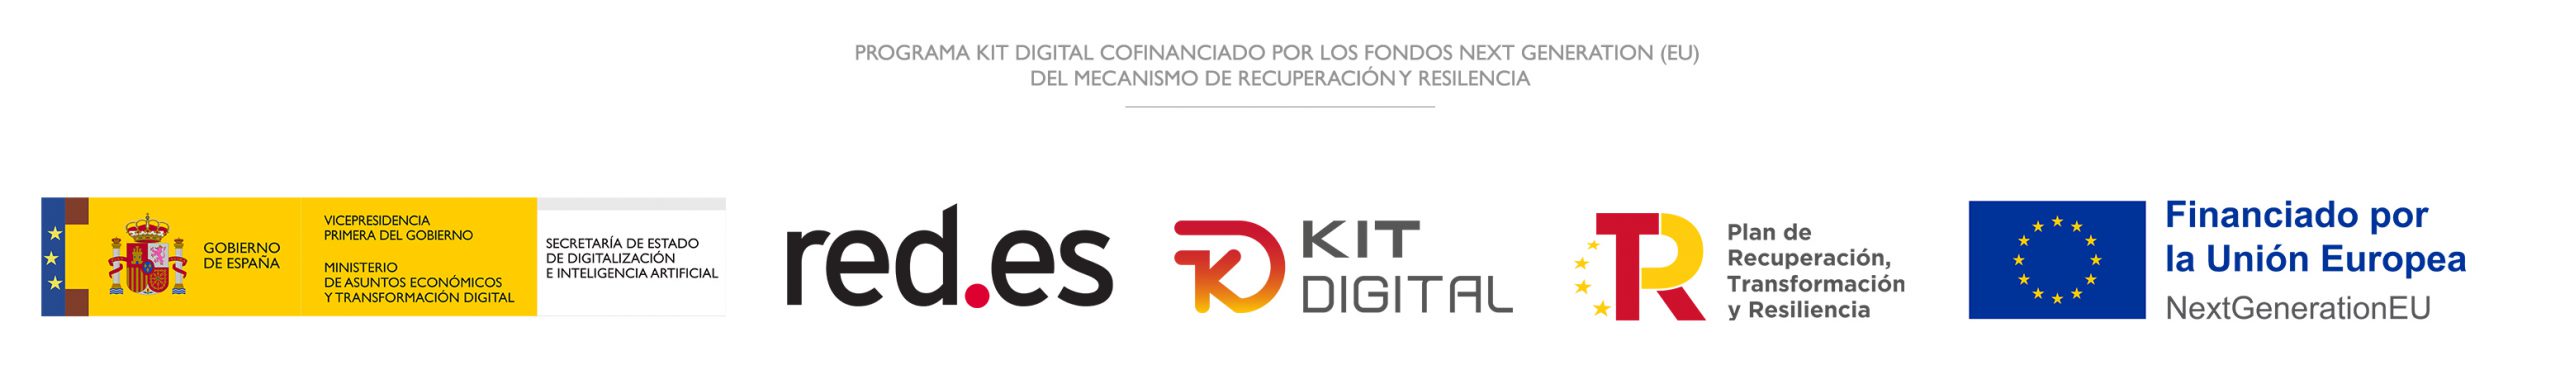 Banner de Programa Kit Digital Cofinanciado por los Fondos Next Generation (EU) del Mecanismo de Recuperación y Resilencia